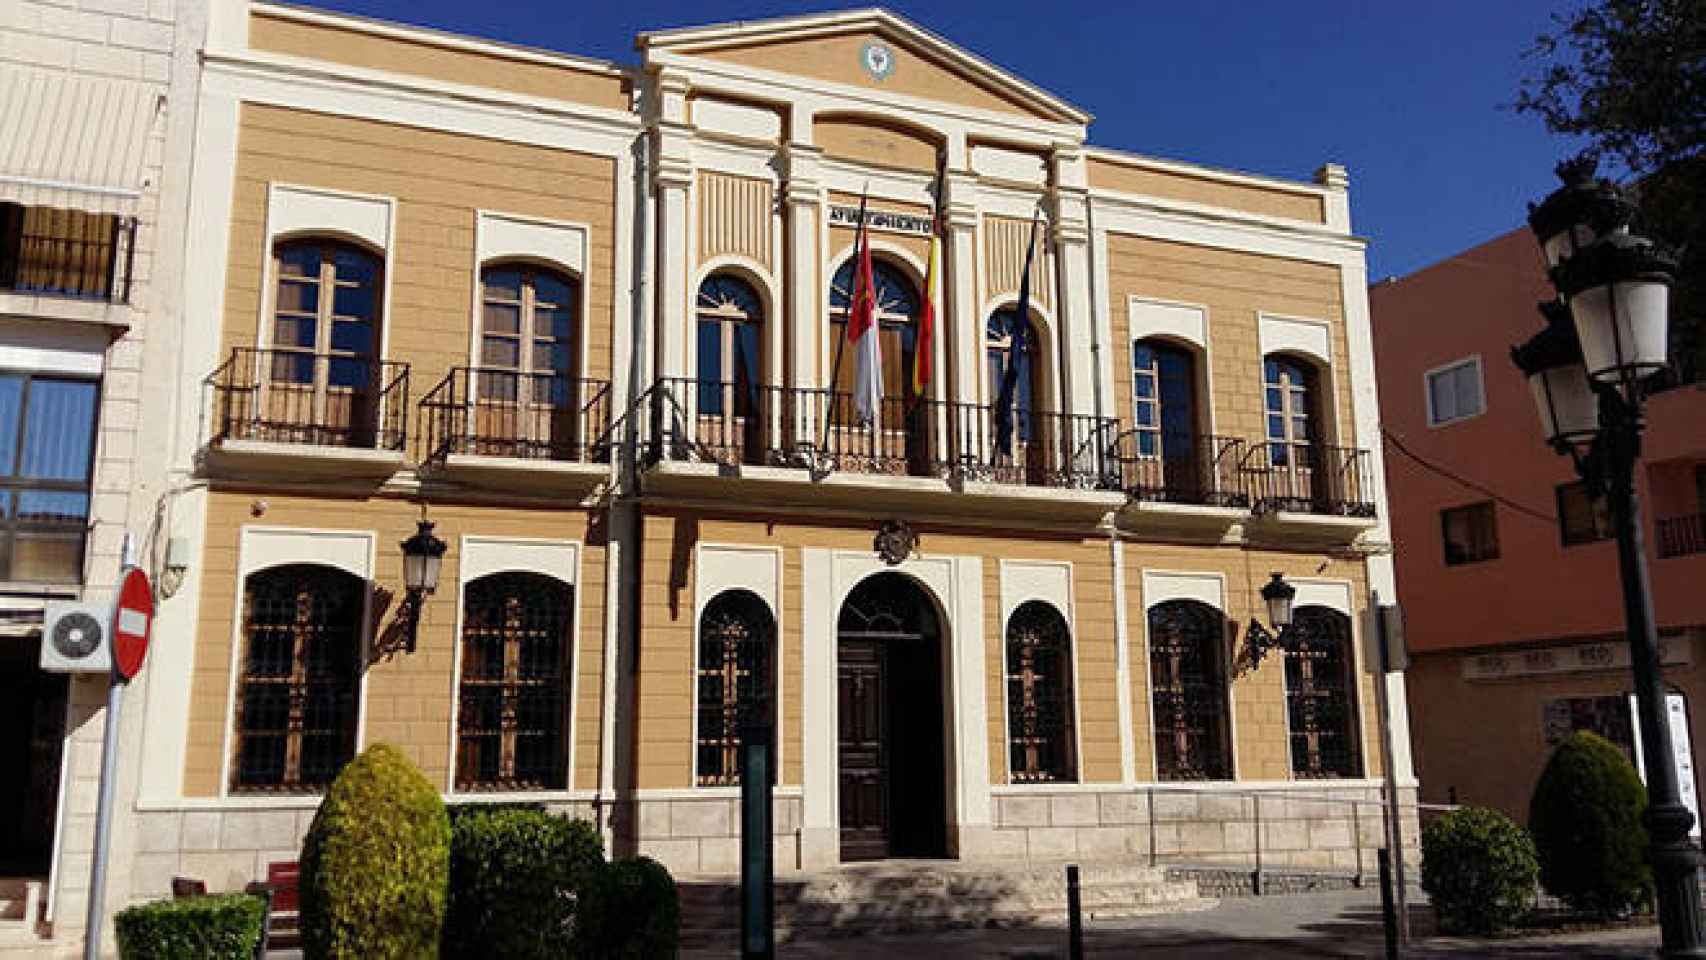 FOTO: Ayuntamiento de Quintanar de la Orden.